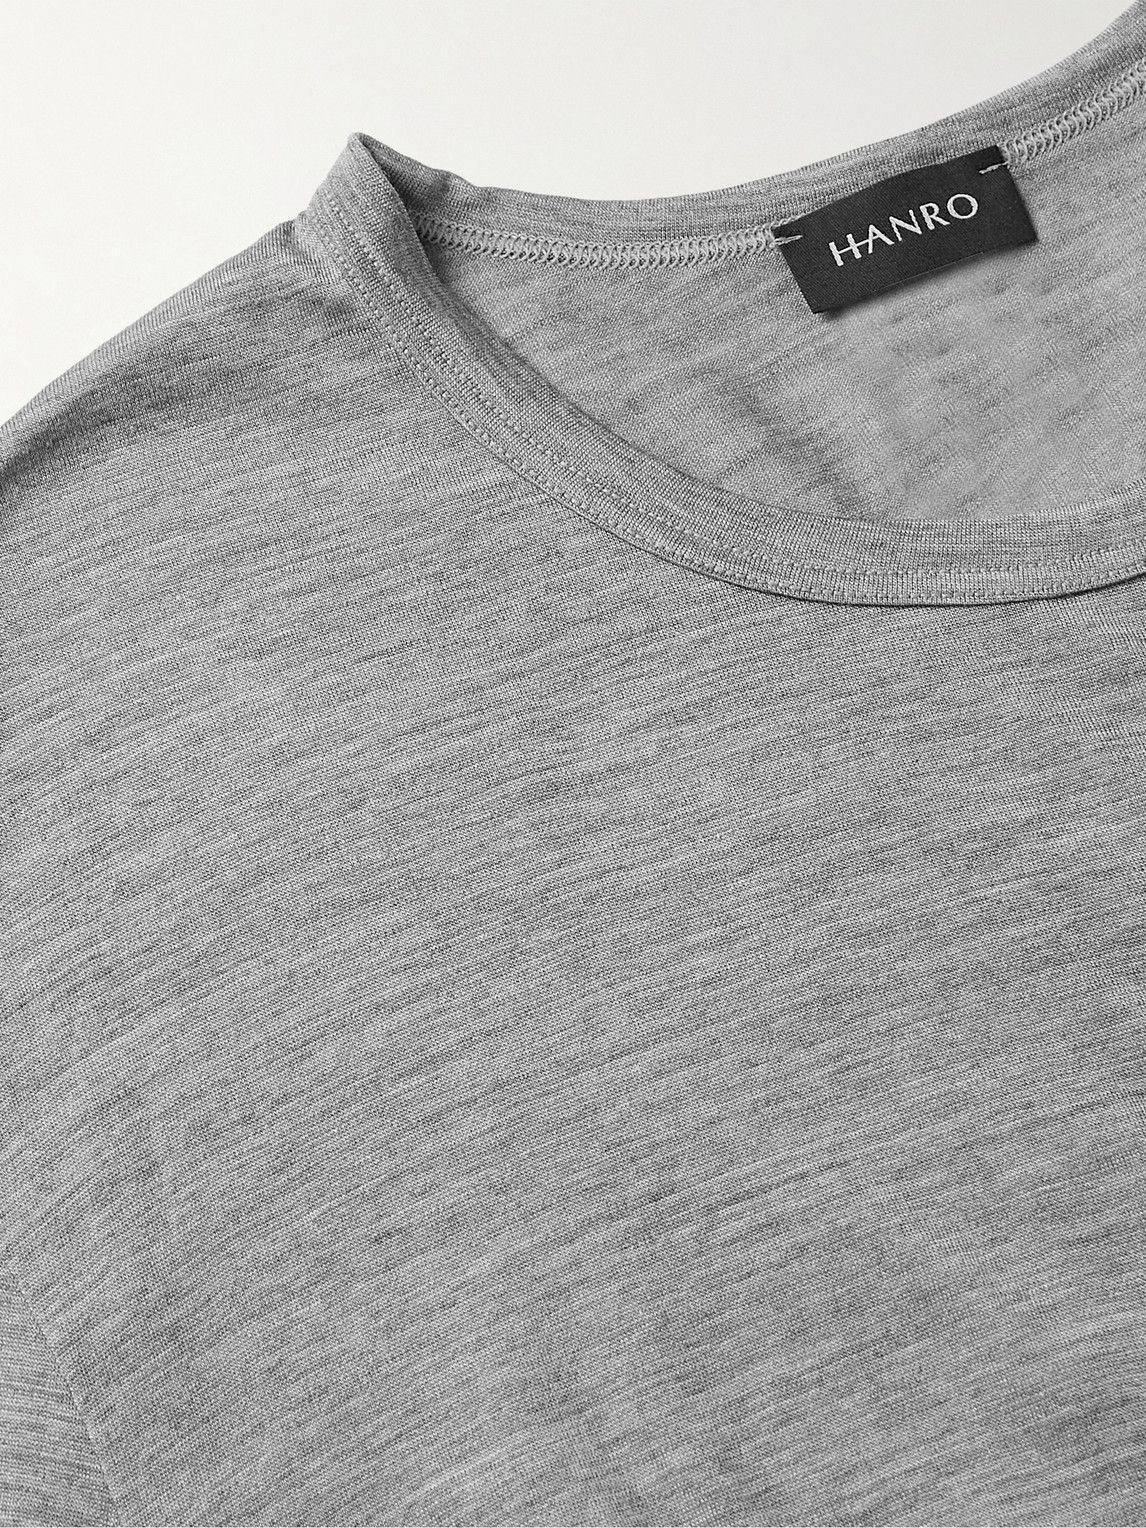 Hanro - Merino Wool and Silk-Blend T-Shirt - Gray Hanro